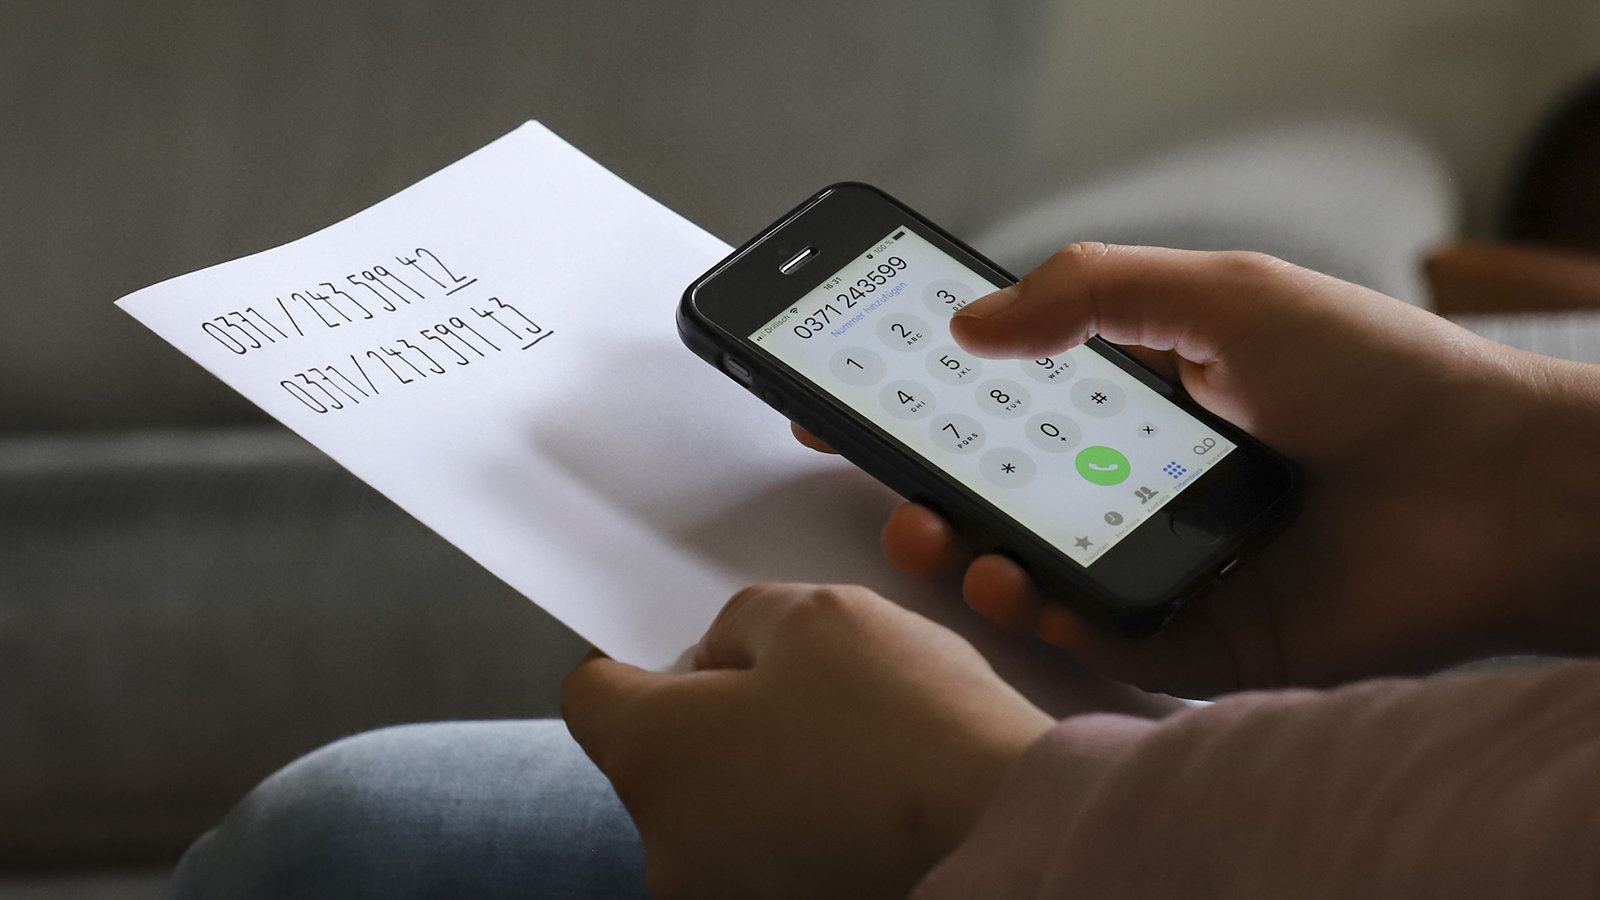 Smartphone in der Hand mit Telefonnumer im Display, daneben zwei Telefonnumern, die auf einem Zettel stehen